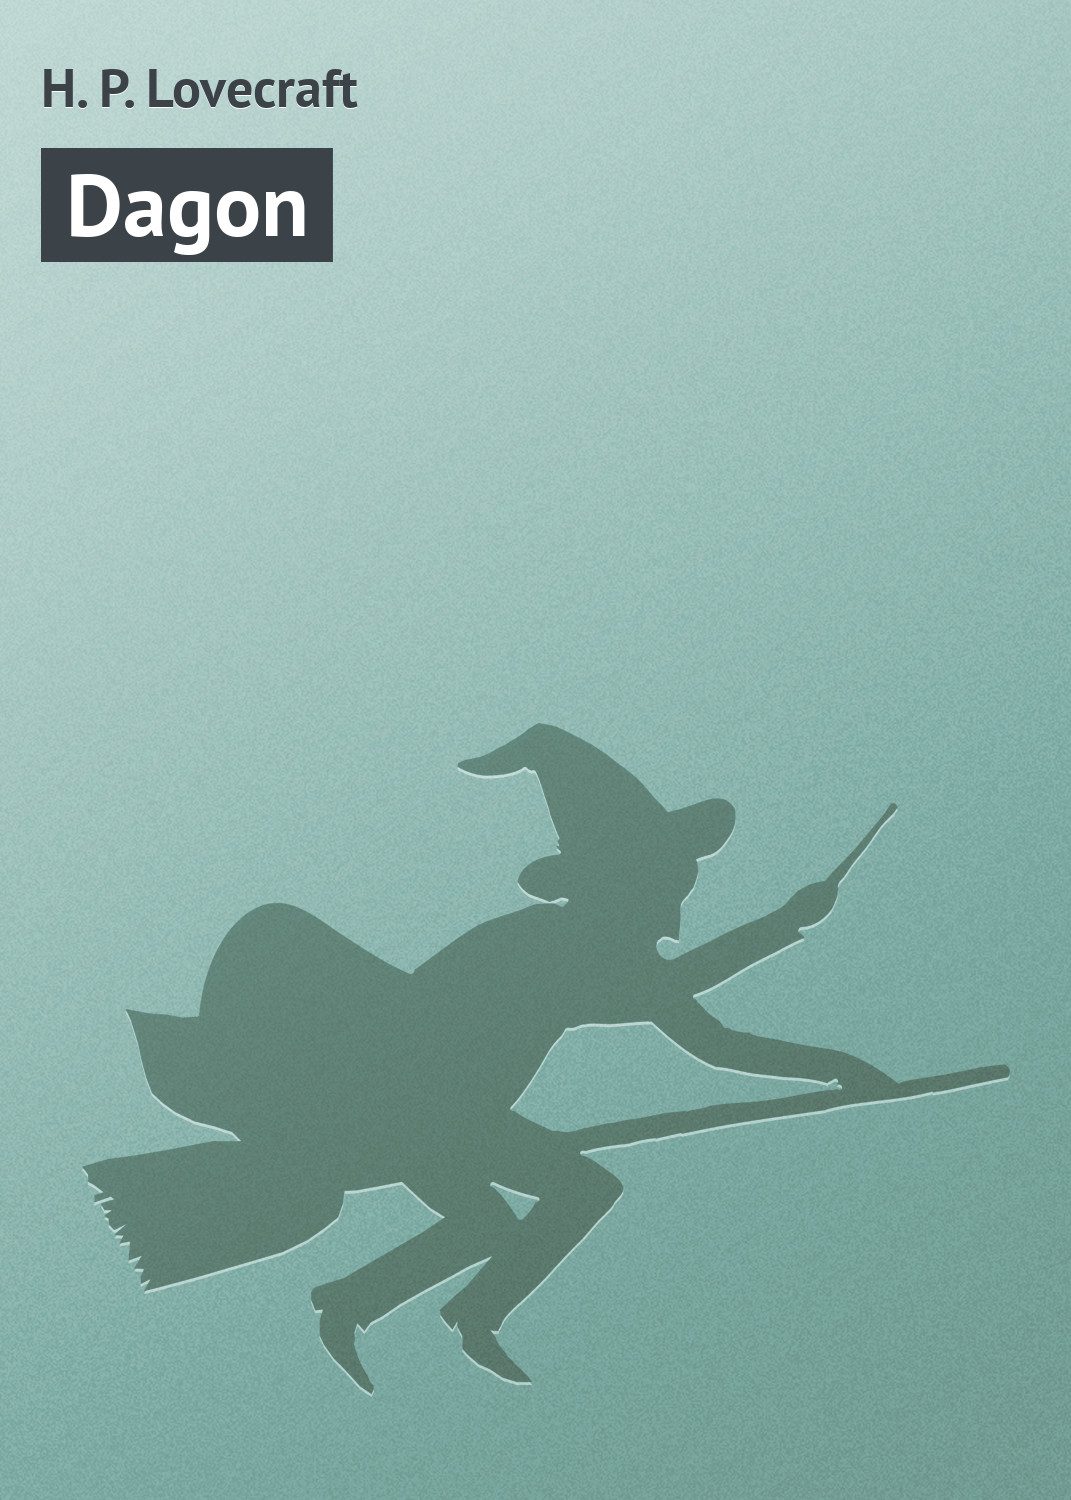 Книга Dagon из серии , созданная H. Lovecraft, может относится к жанру Зарубежное: Прочее, Зарубежная классика, Ужасы и Мистика. Стоимость электронной книги Dagon с идентификатором 7609940 составляет 29.95 руб.